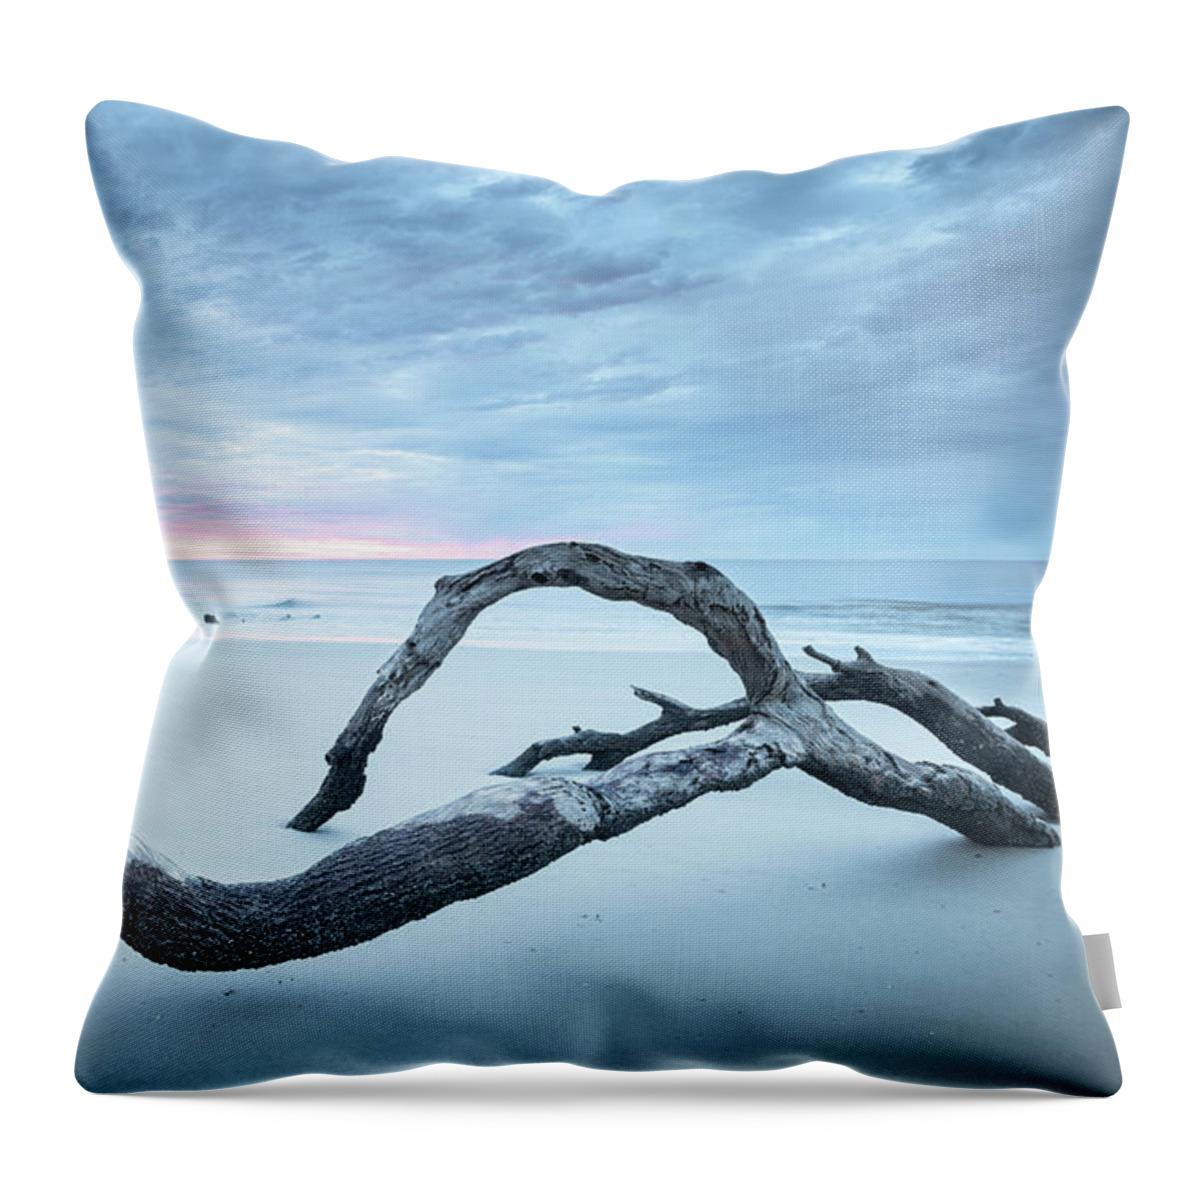 Driftwood Beach Throw Pillow featuring the photograph Driftwood At Its Best by Jordan Hill